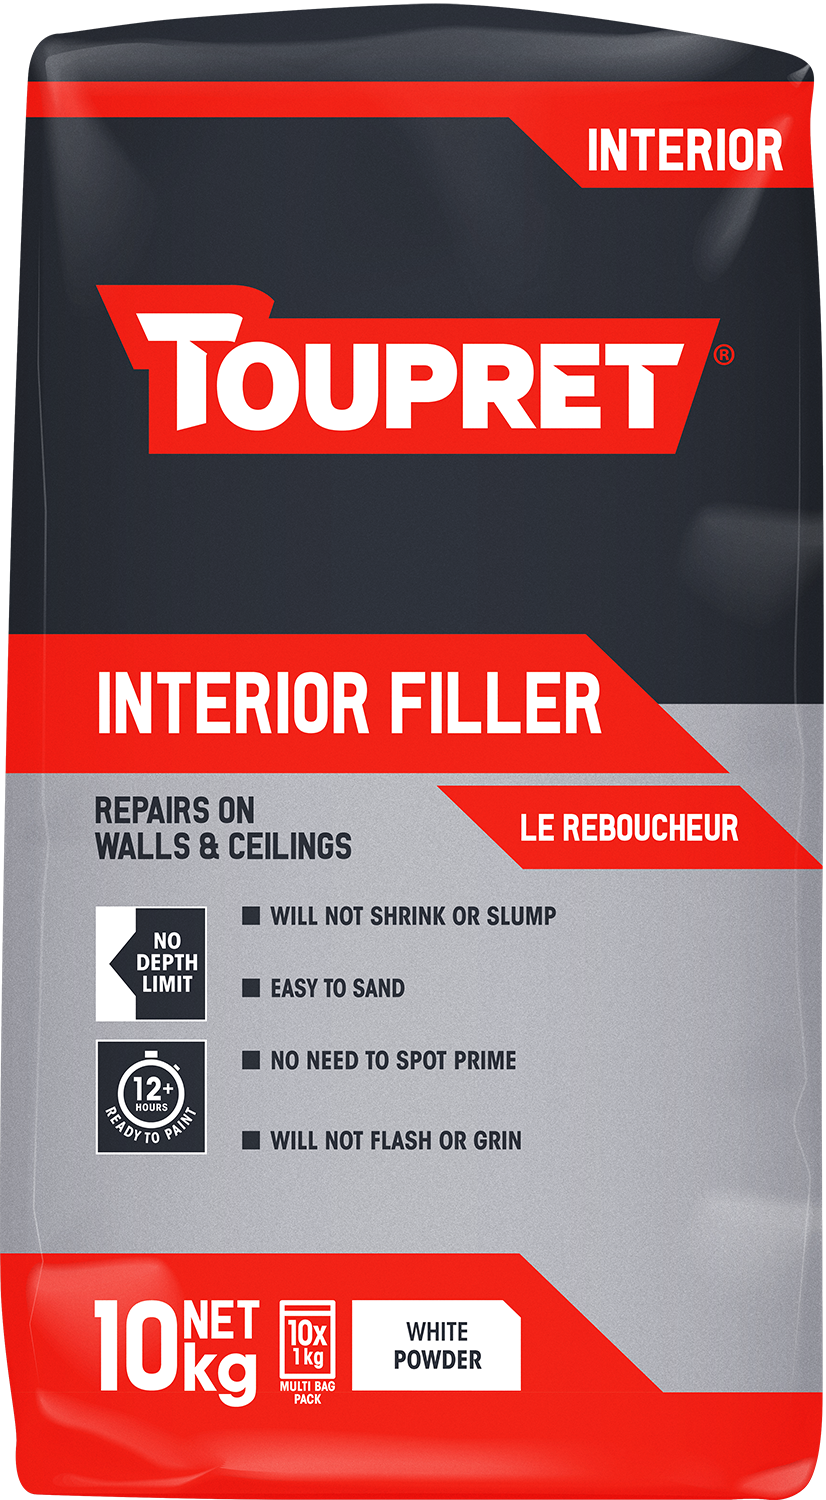 Toupret Interior Filler (Le Reboucheur) 10x 1kg bag in bag